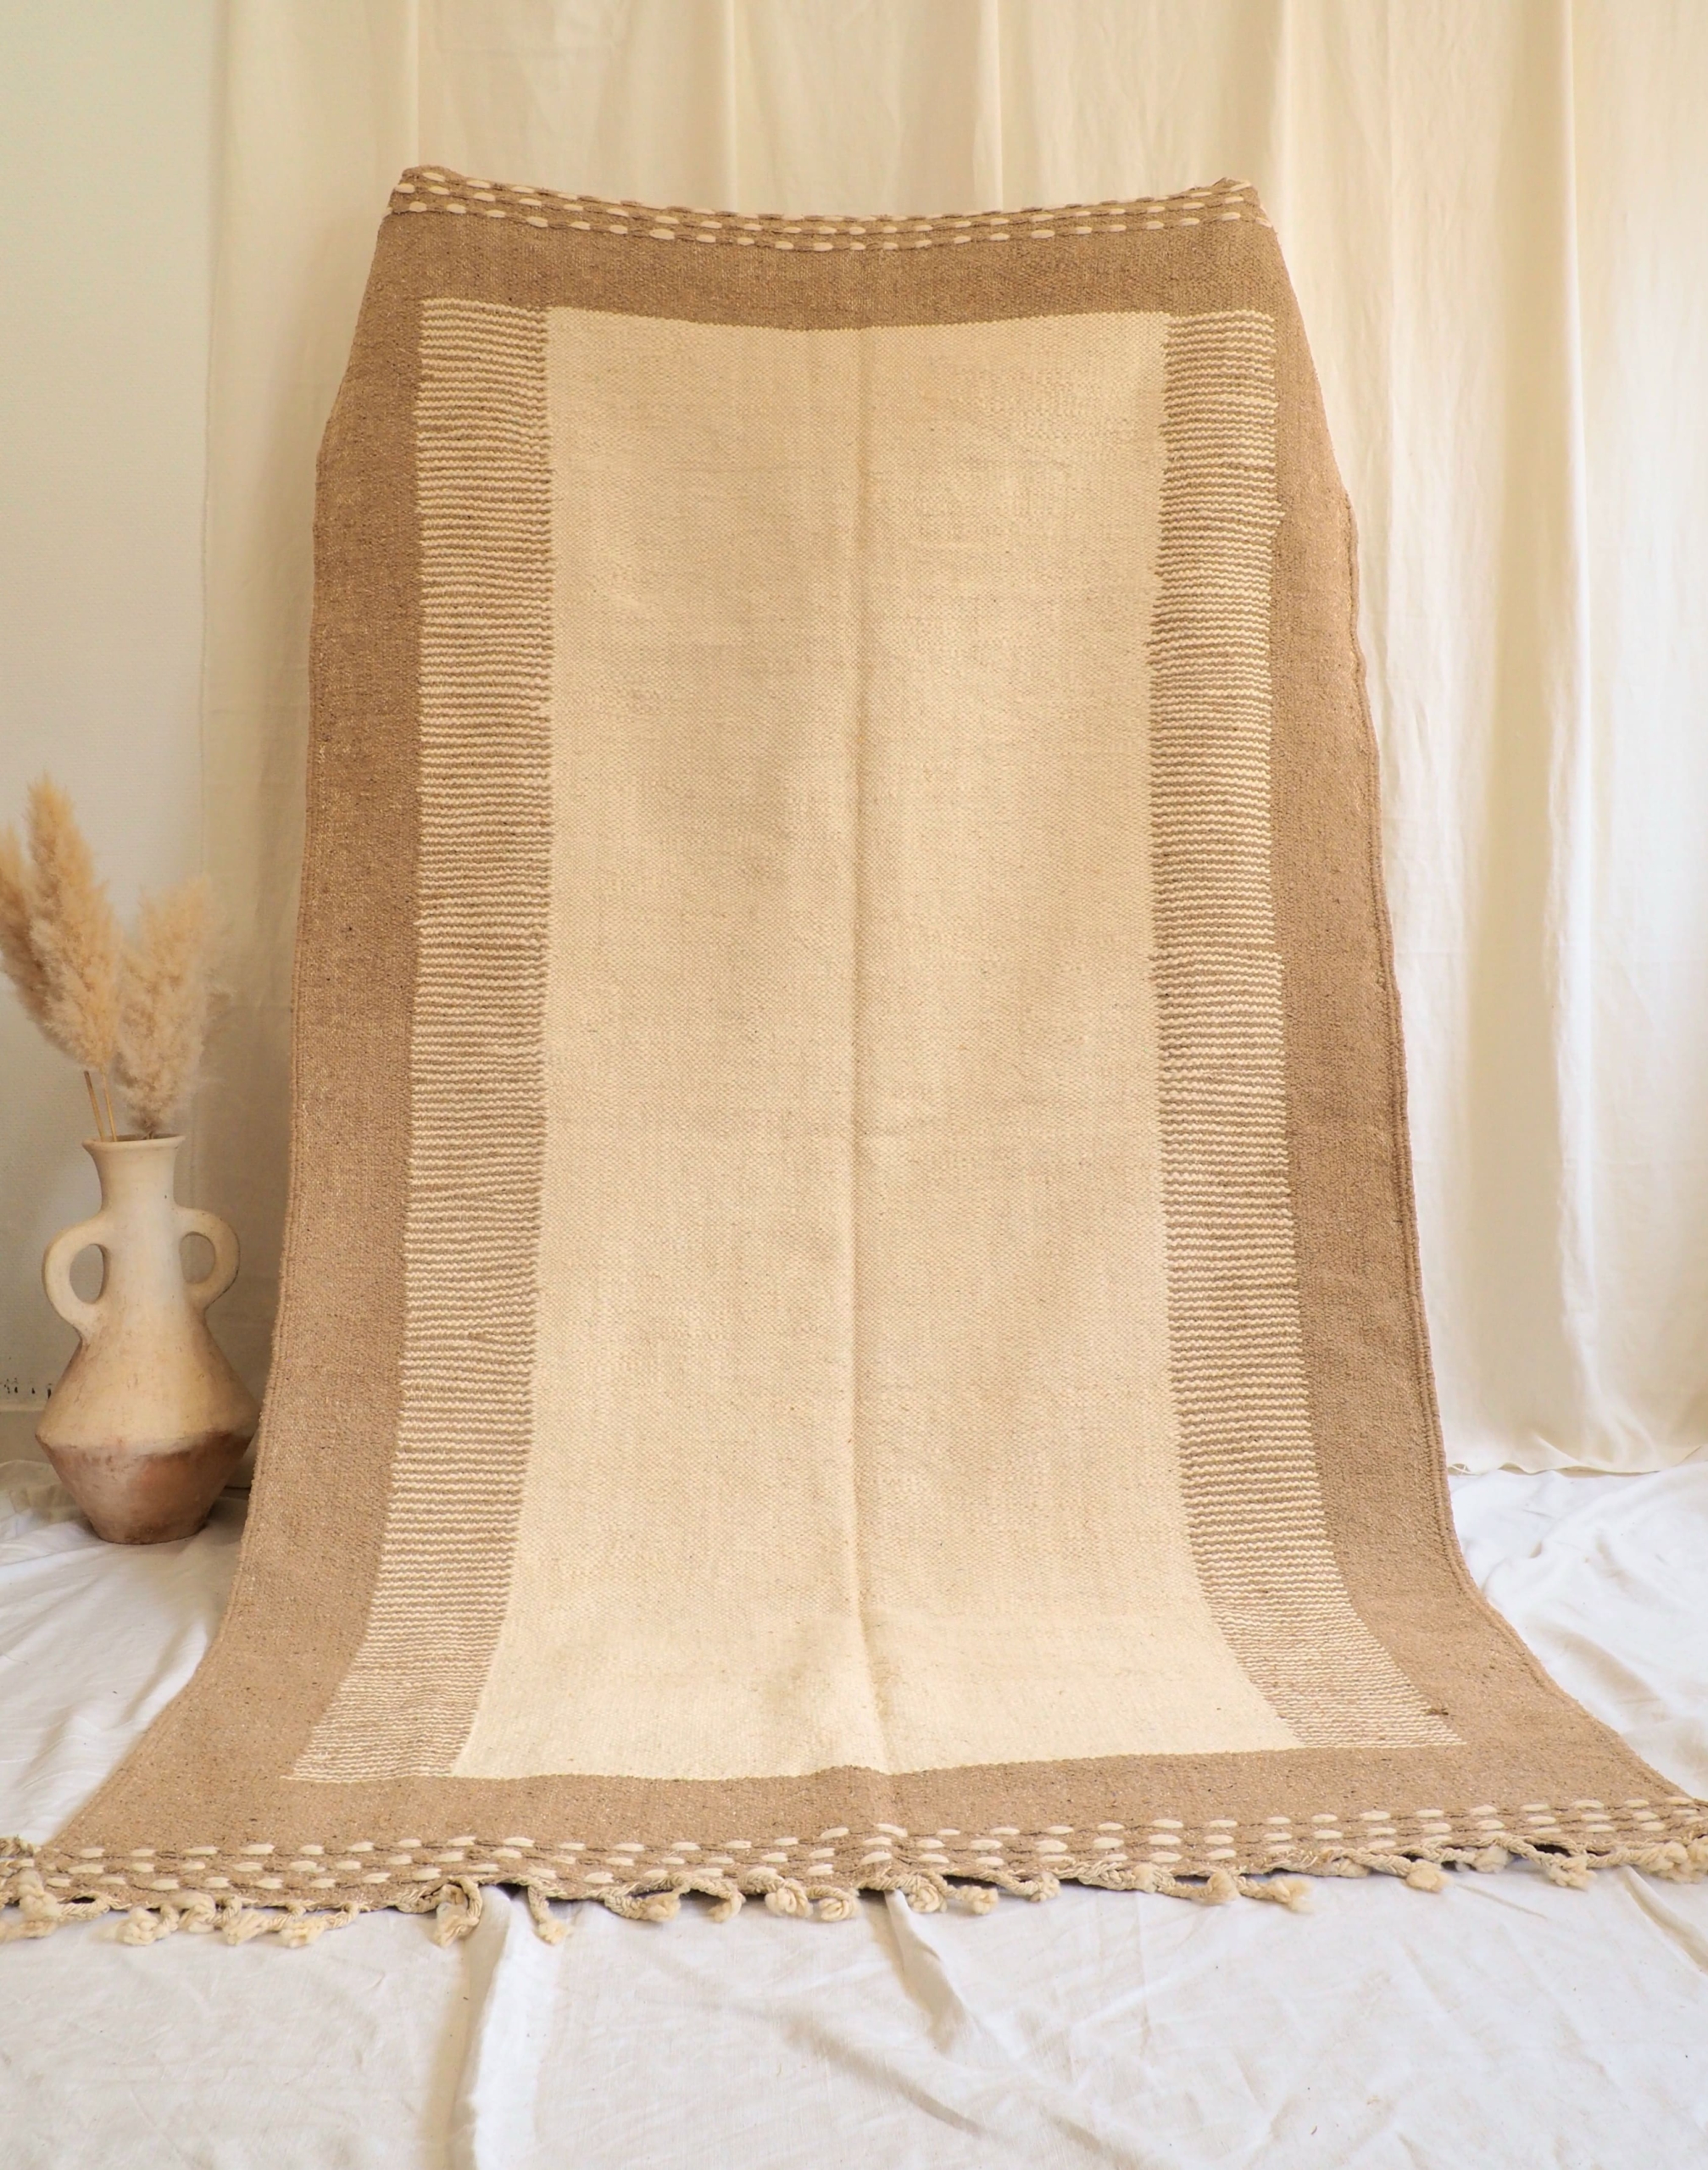 Grand tapis Berbère Marocain fait main en pure laine idéal salon chambre salle à manger